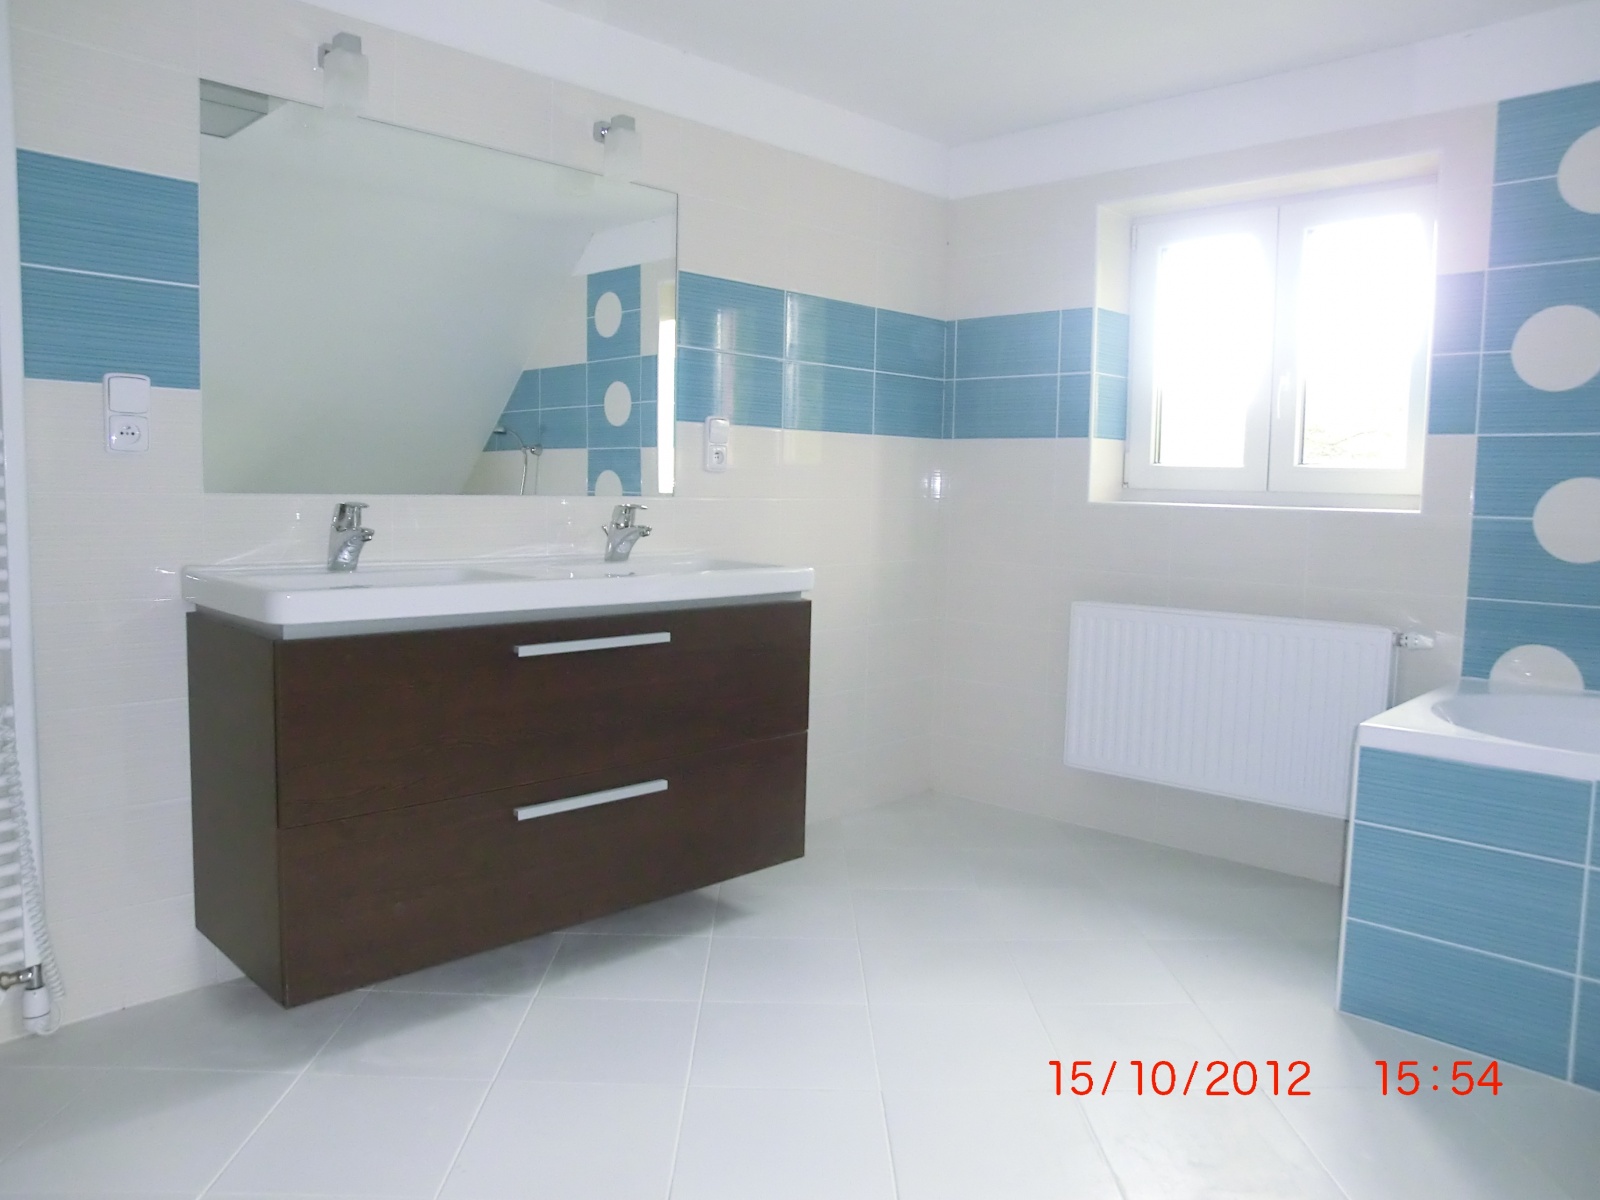 Koupelna s modrým pruhem - LUKY instalatérství